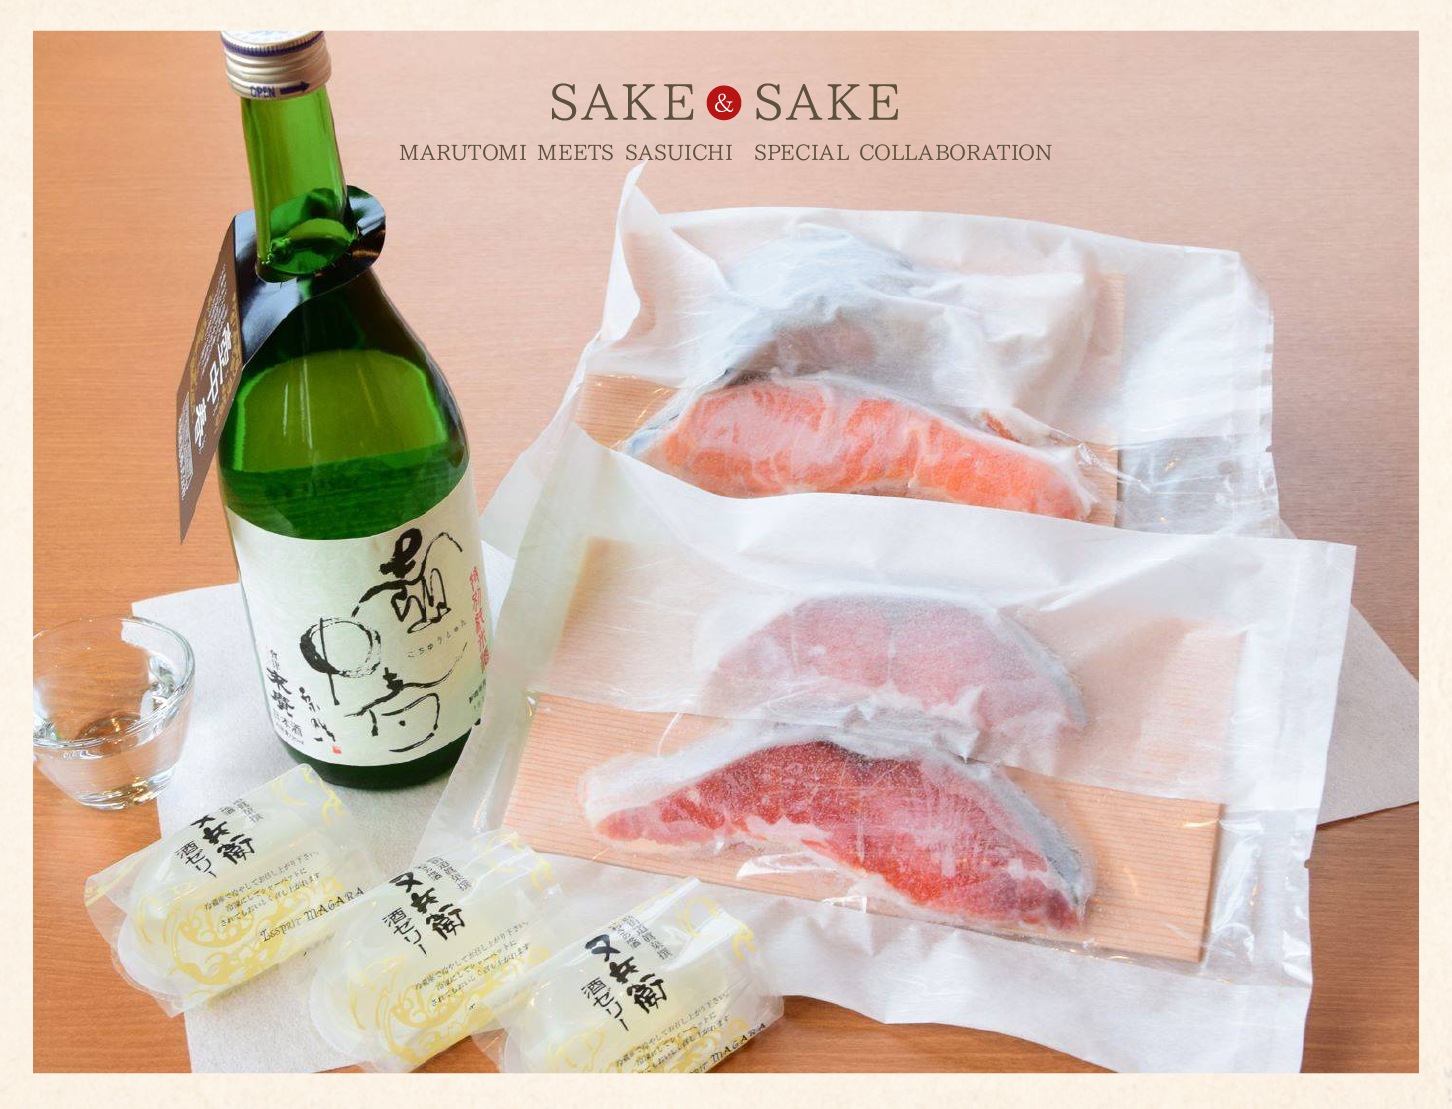 魚屋自慢の鮭と、酒屋のオススメ日本酒が楽しめる贅沢なコラボセット。ご自宅用、ご贈答品にとご利用ください